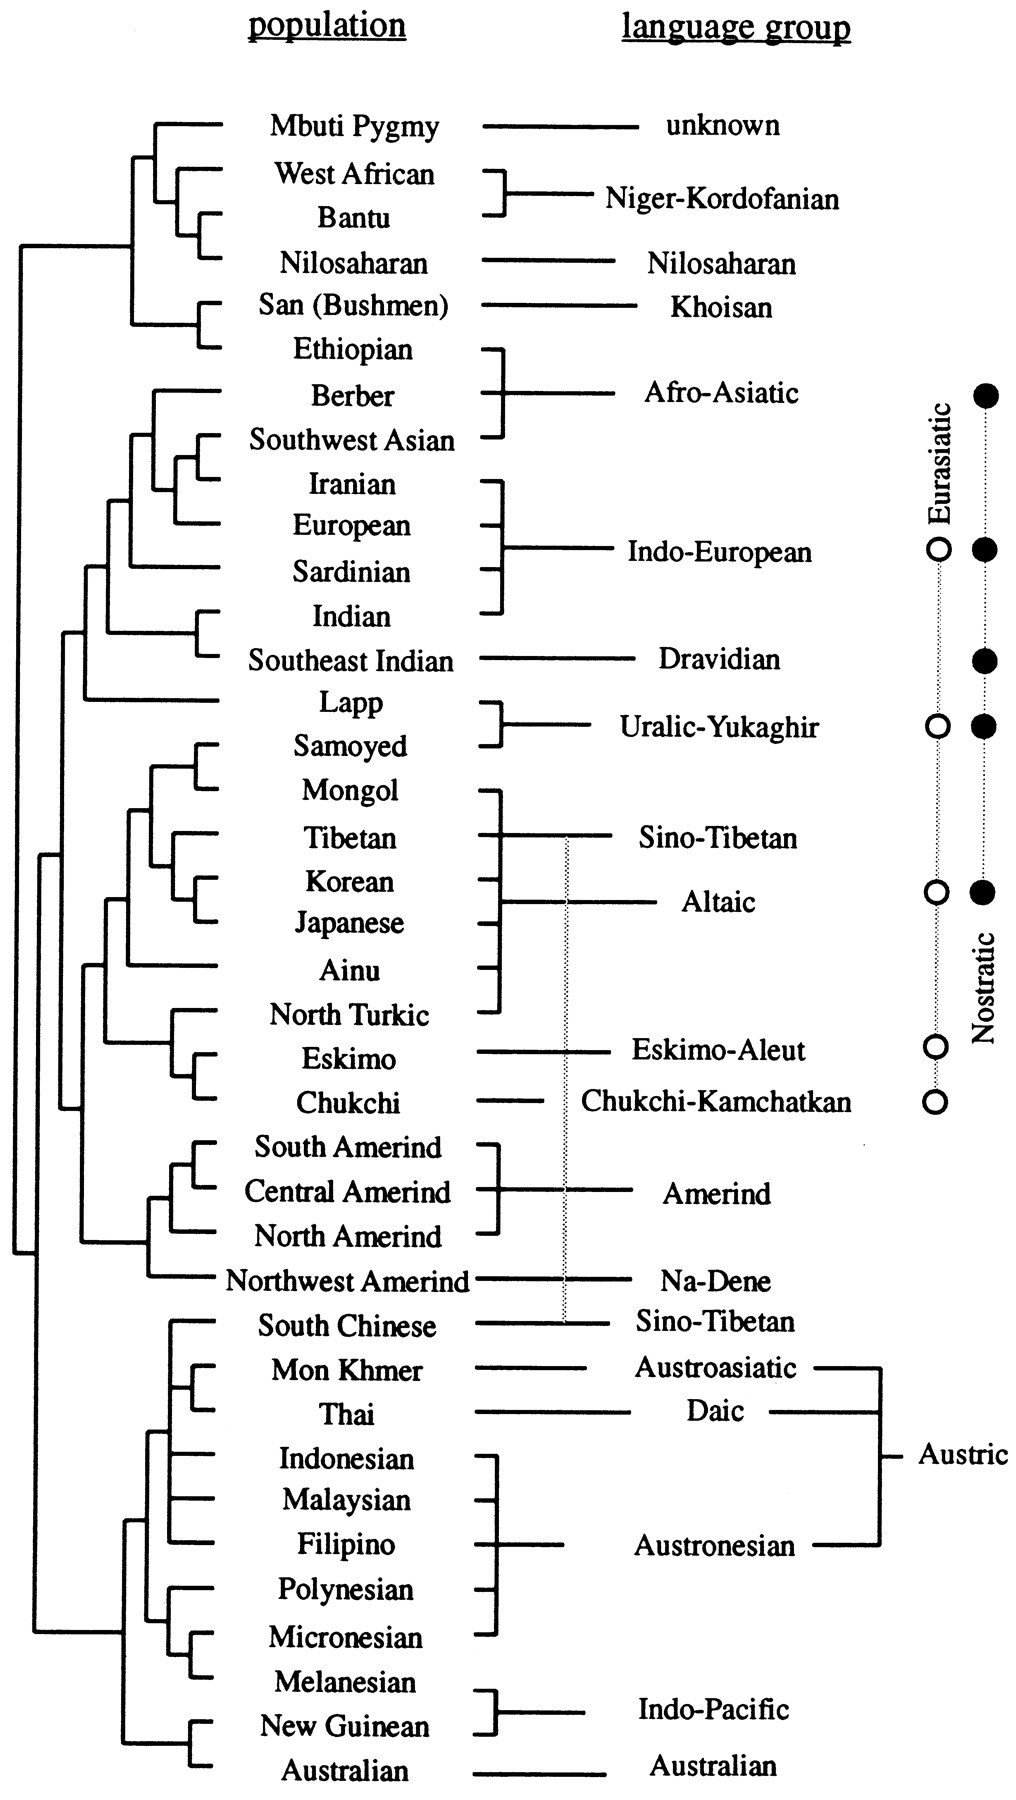 Cavalli-Sforza táblázata a populációgenetikai csoportokkal és nyelvcsaládokkal